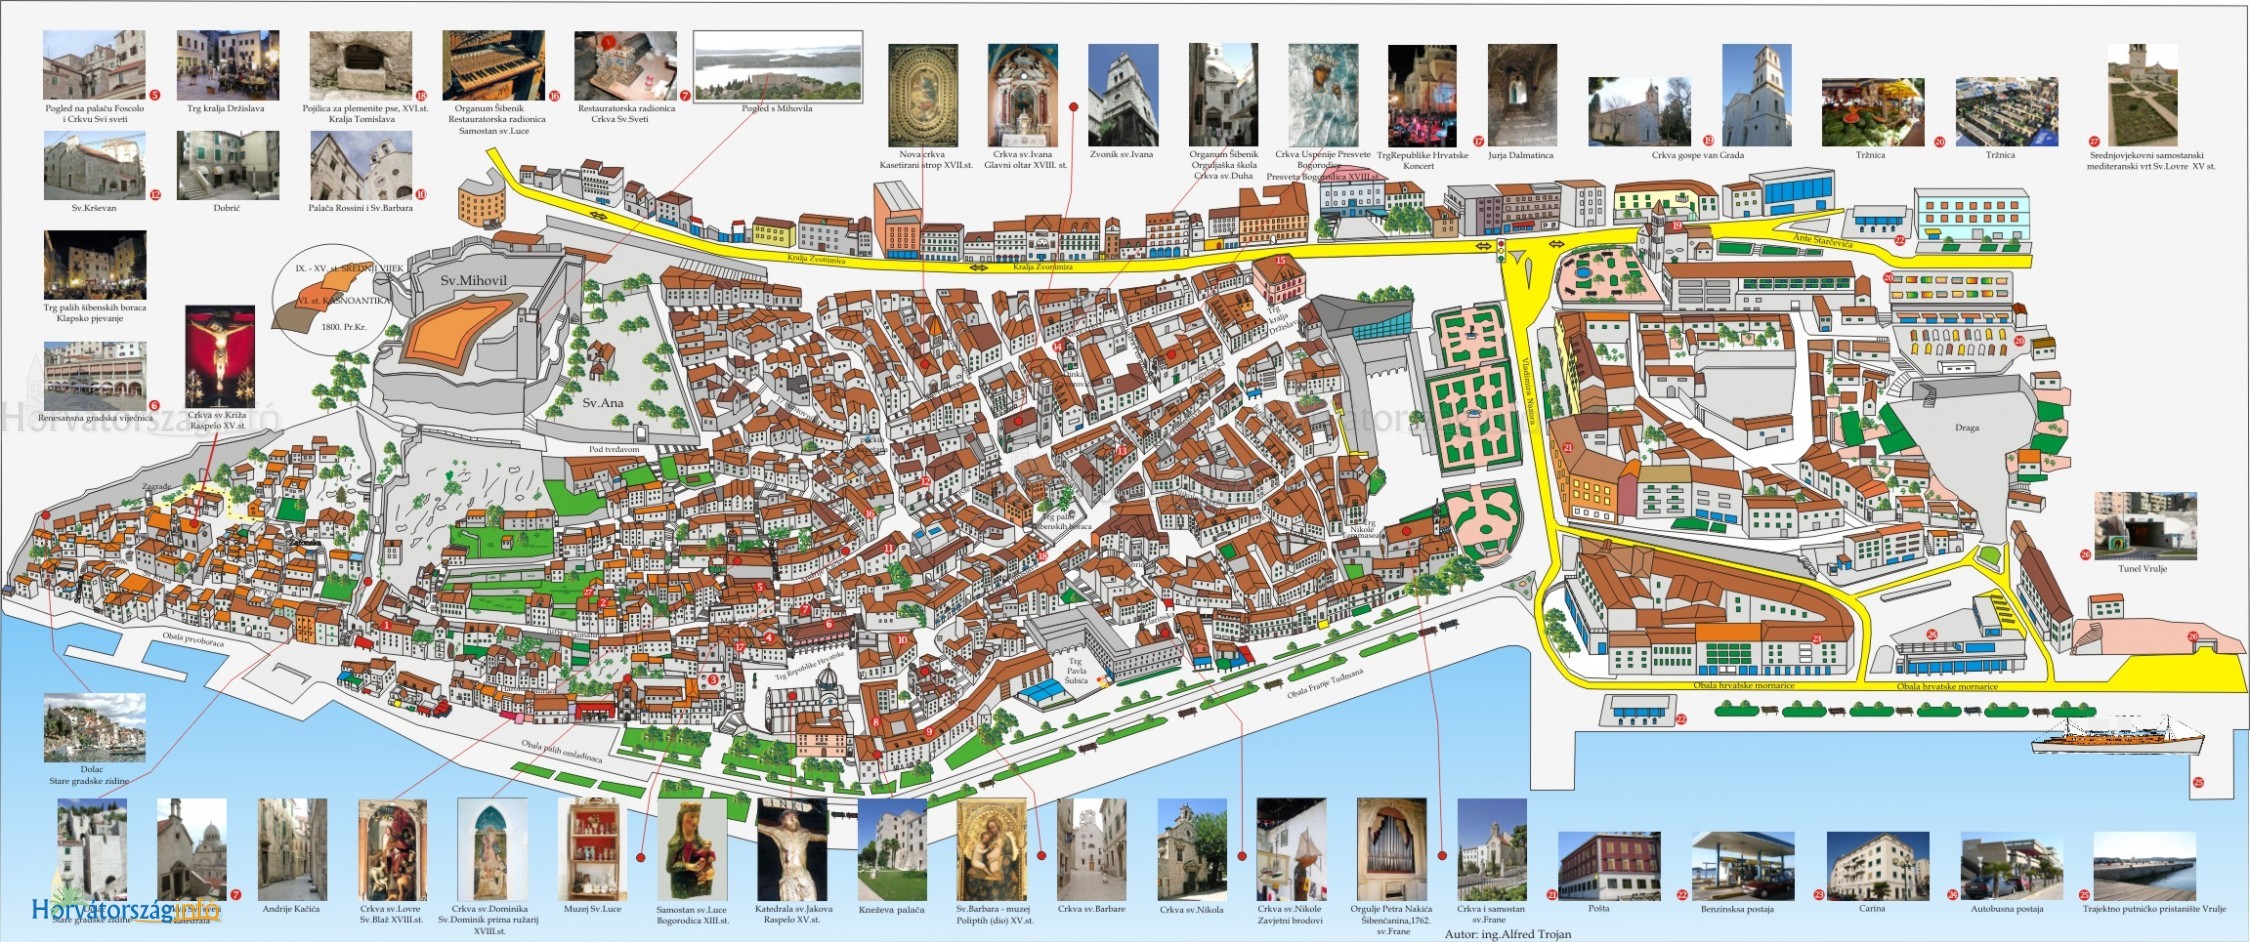 budapest látványosságai térkép Nyaralás Sibenikben? Érdekességek, programok, látnivalók budapest látványosságai térkép